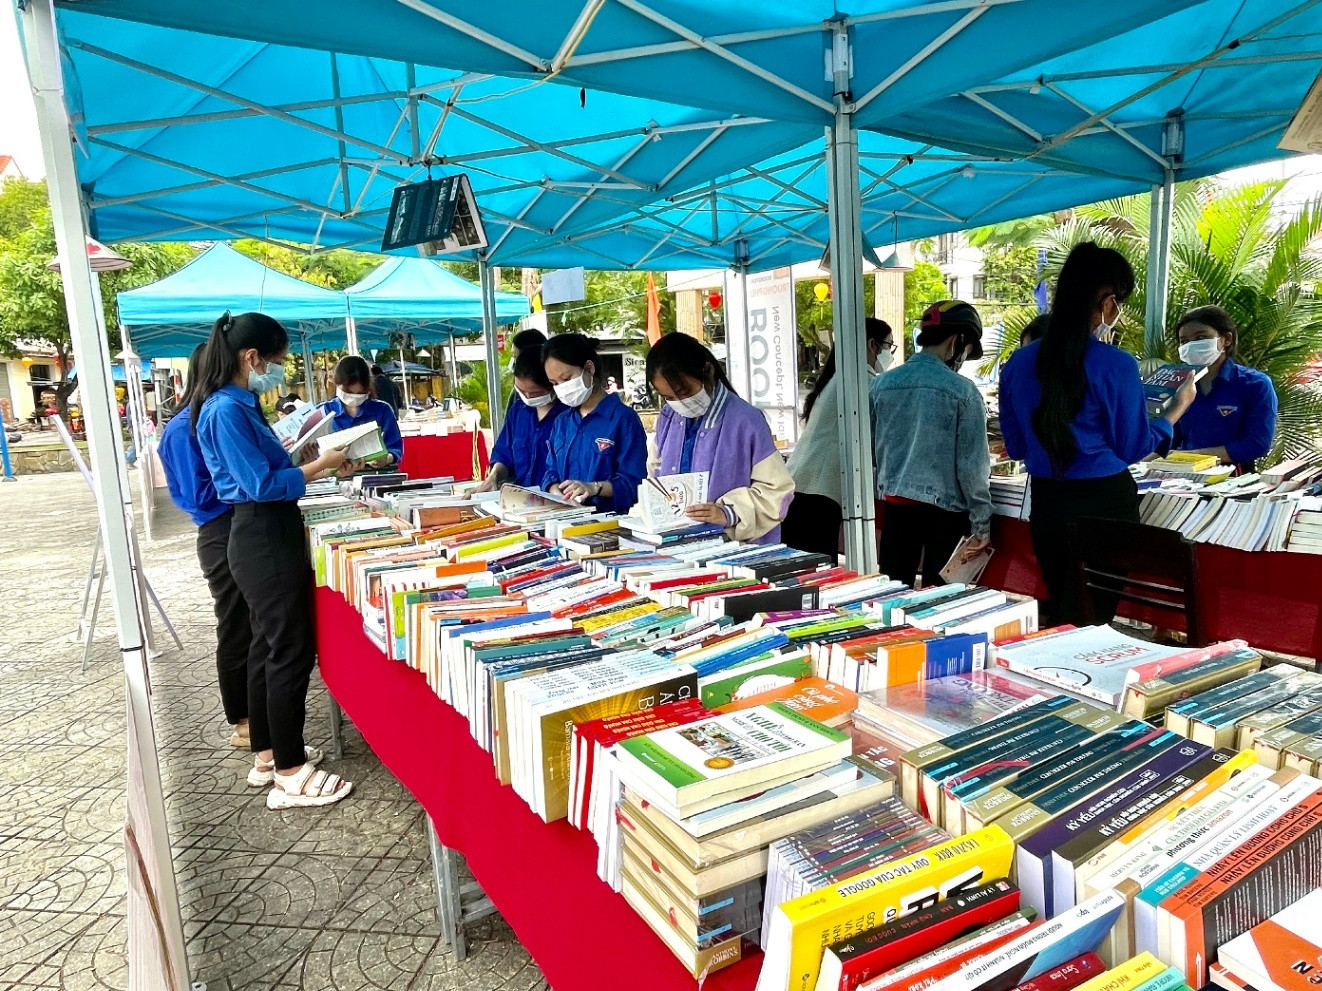 Ngày sách và Văn hóa đọc Việt Nam lần thứ Nhất tại tỉnh Quảng Nam được tổ chức tại TP.Hội An năm 2022 thu hút rất nhiều học sinh trên địa bàn tham gia.